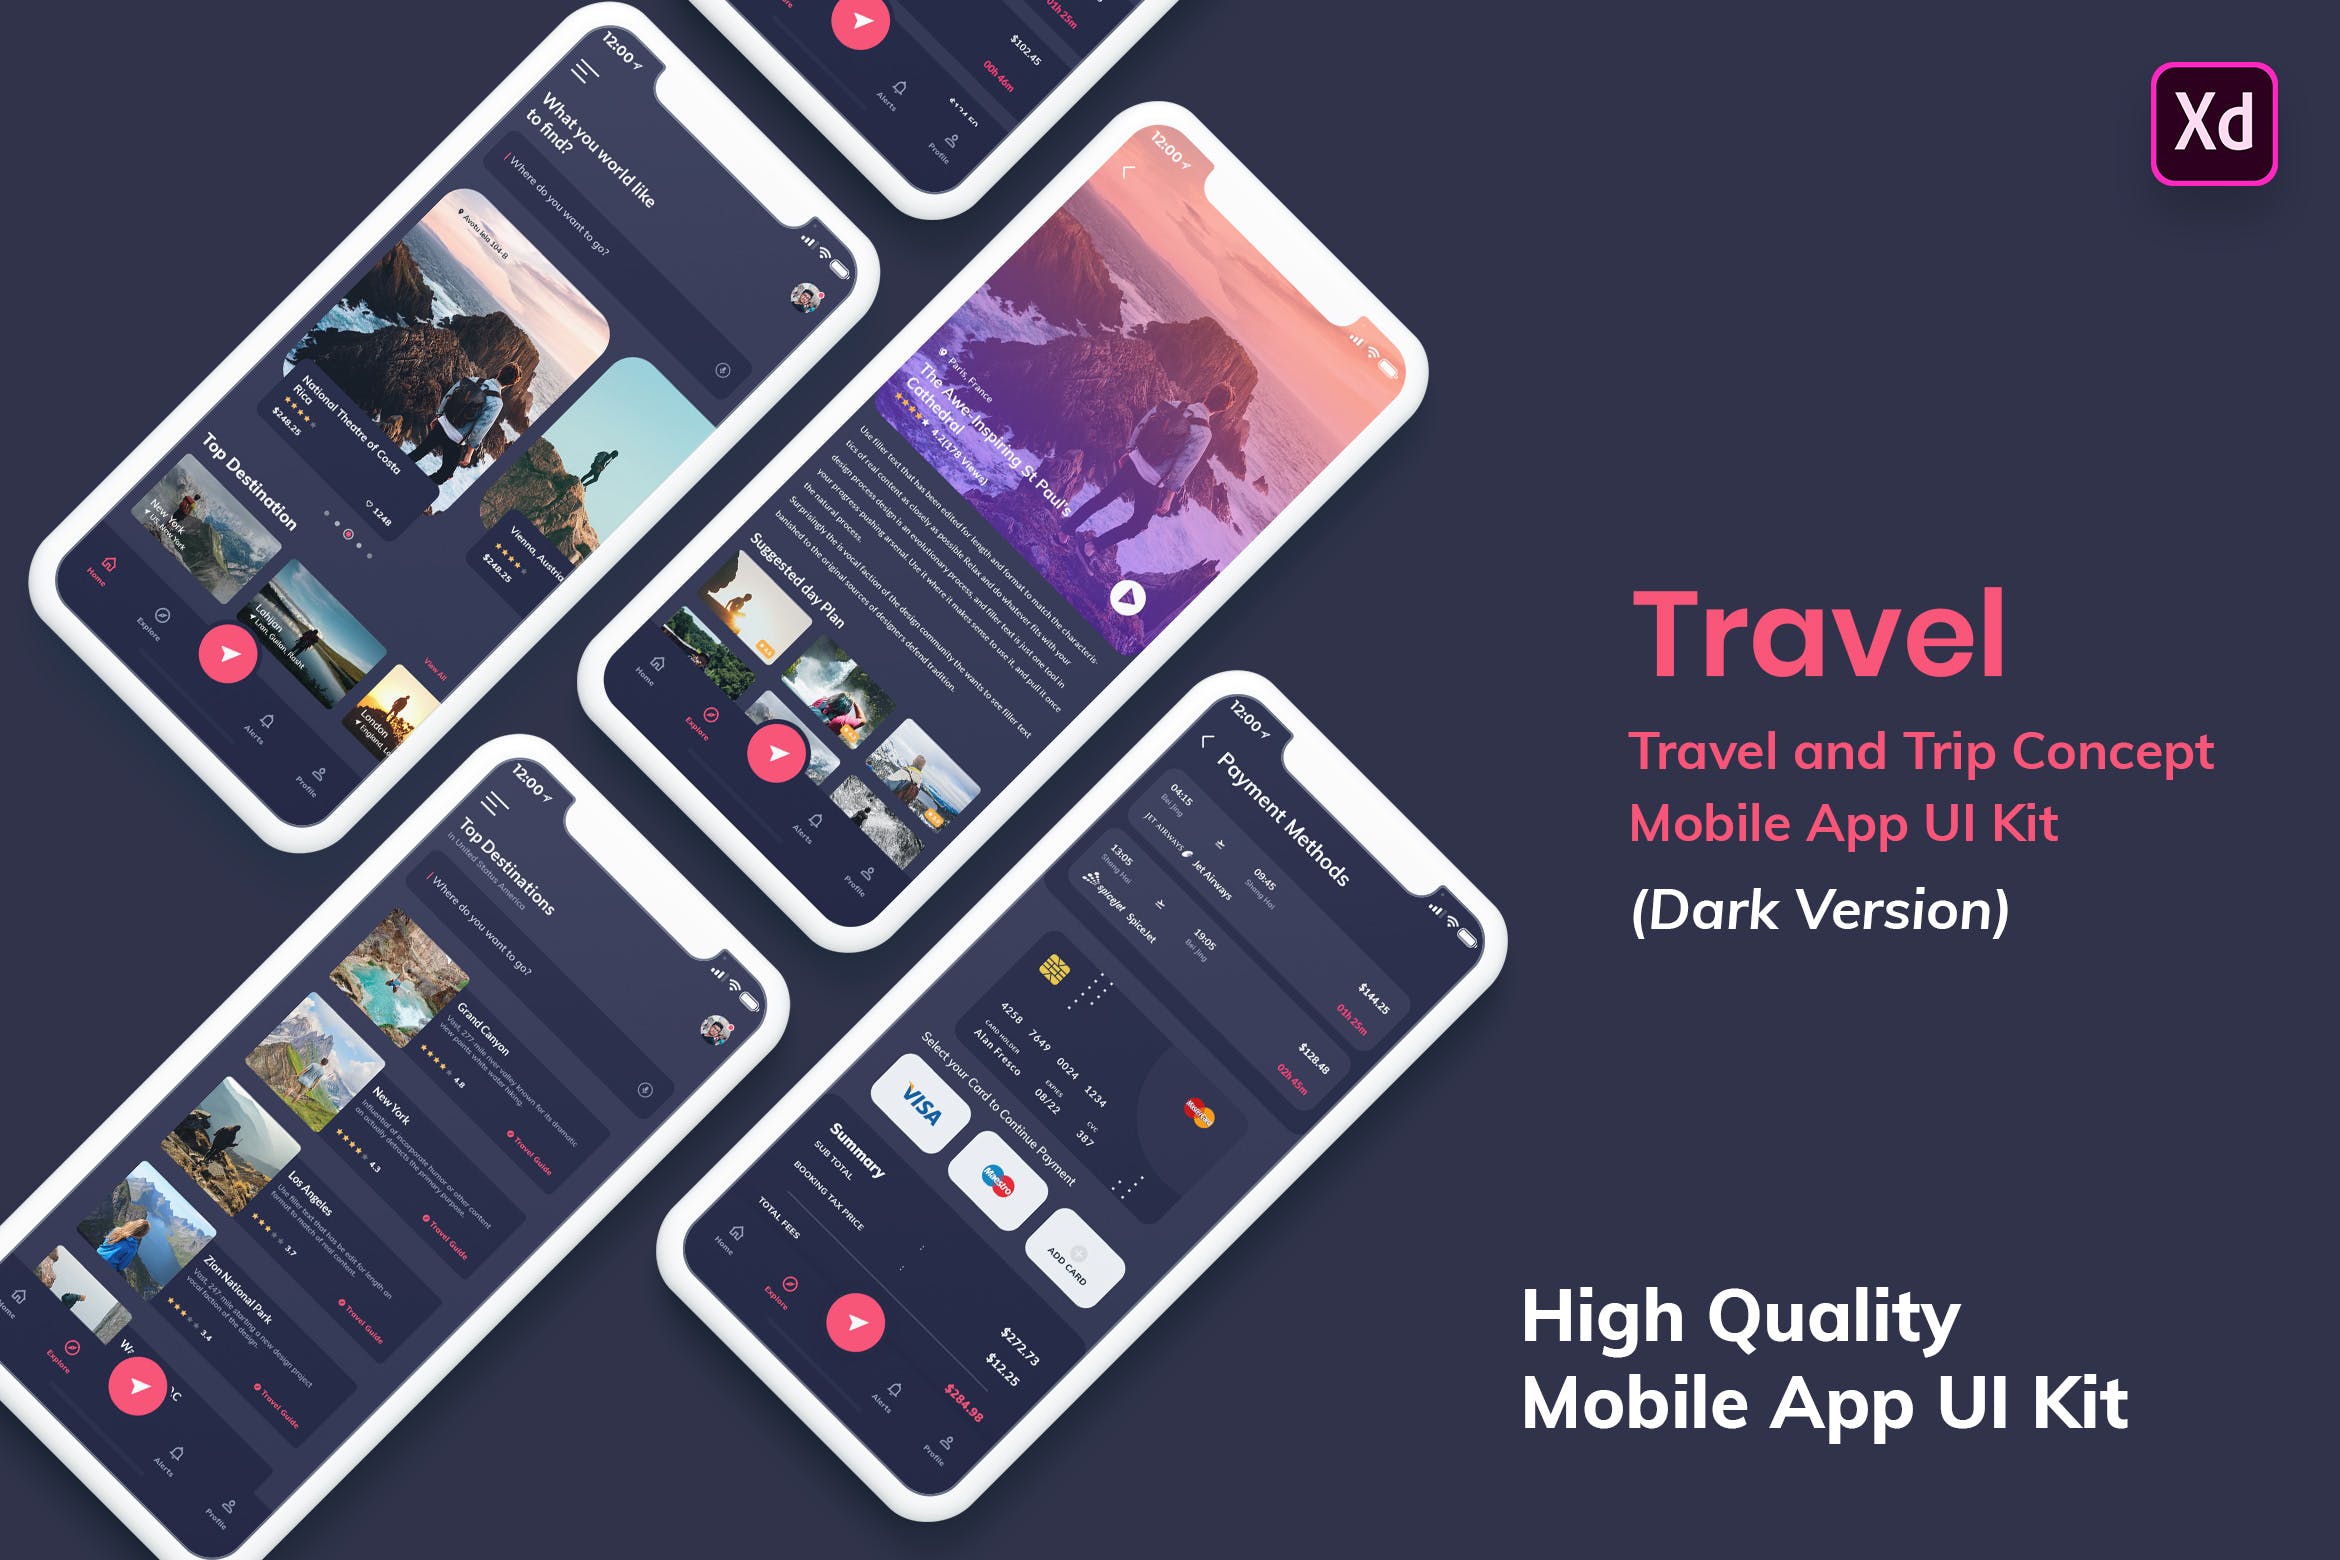 机票/酒店预订旅游主题APP应用UI设计套件XD模板[夜间模式版本] Tour & Travel MobileApp UI Kit Dark Version (XD)插图